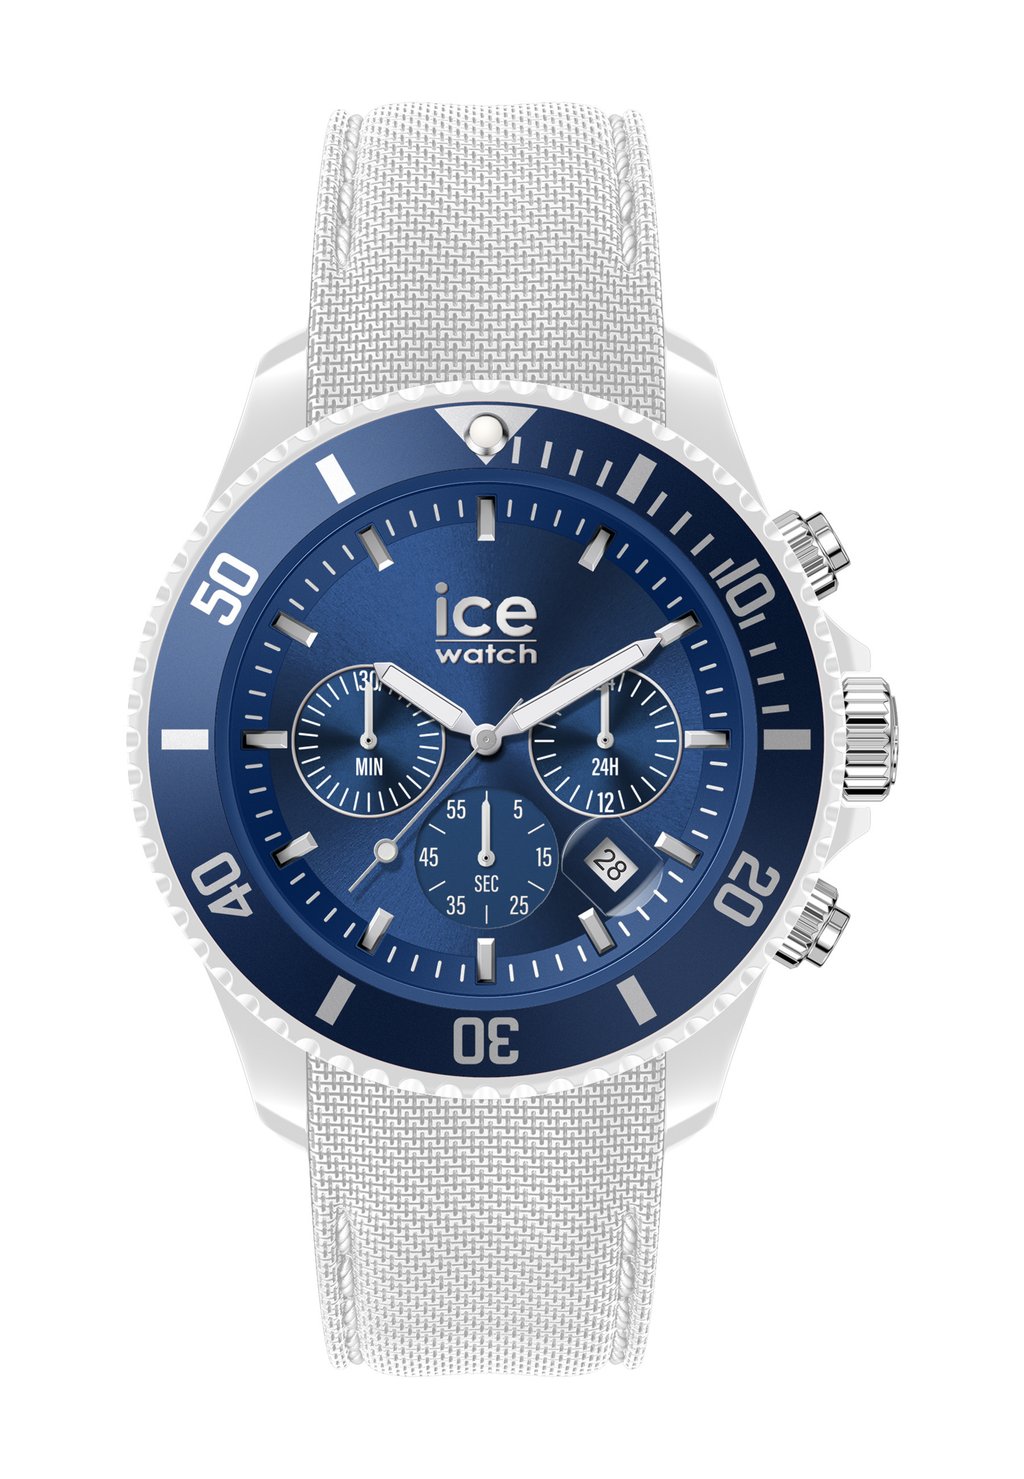 хронограф ice watch синий красный l Хронограф Ice-Watch, цвет white blue l